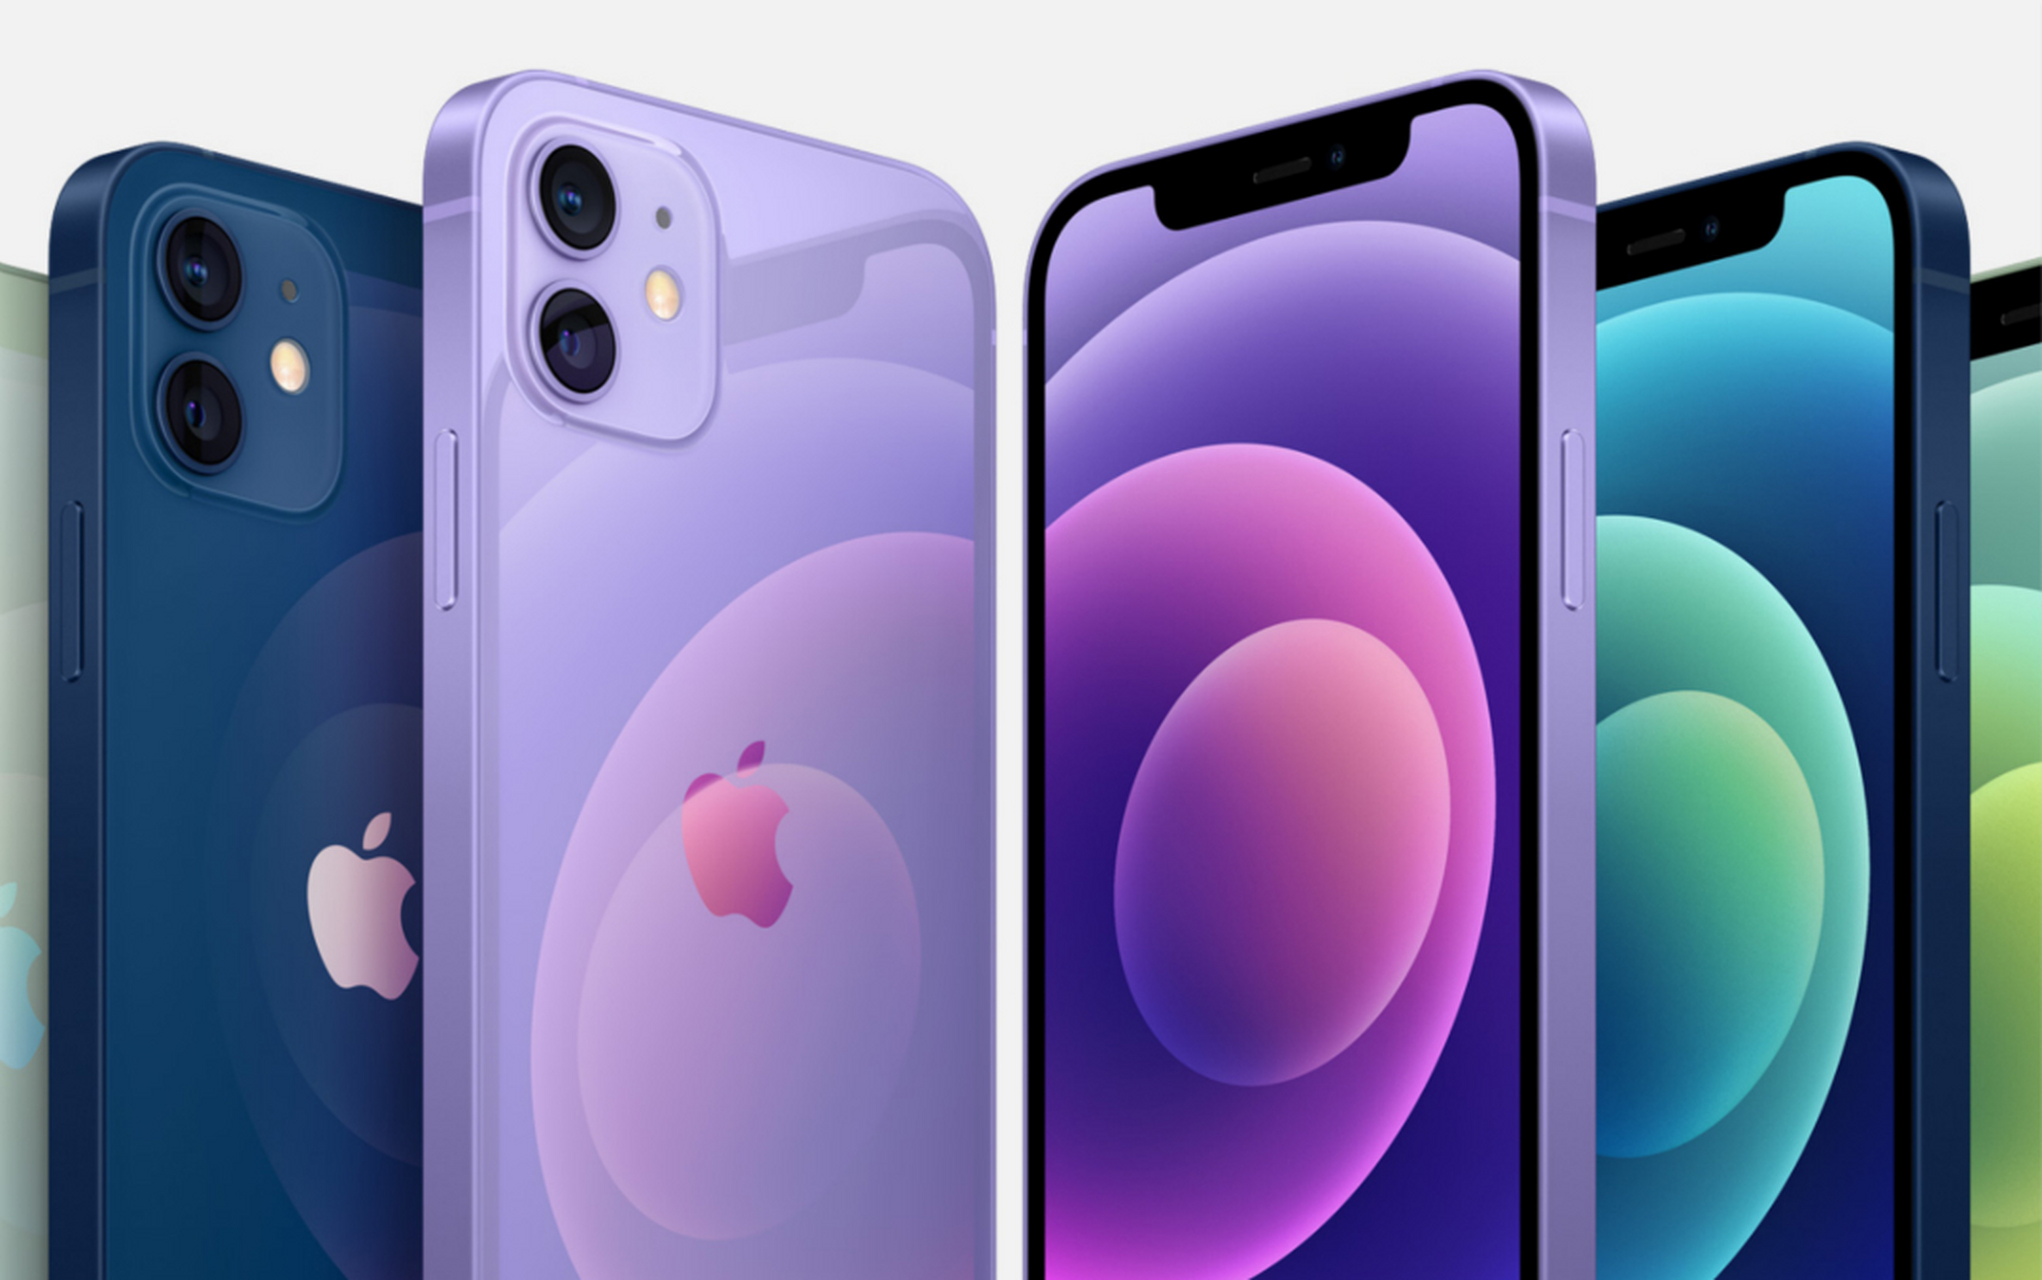 苹果发布了紫色版iphone 12,第一天上市销售就跌破发行价,而且多家